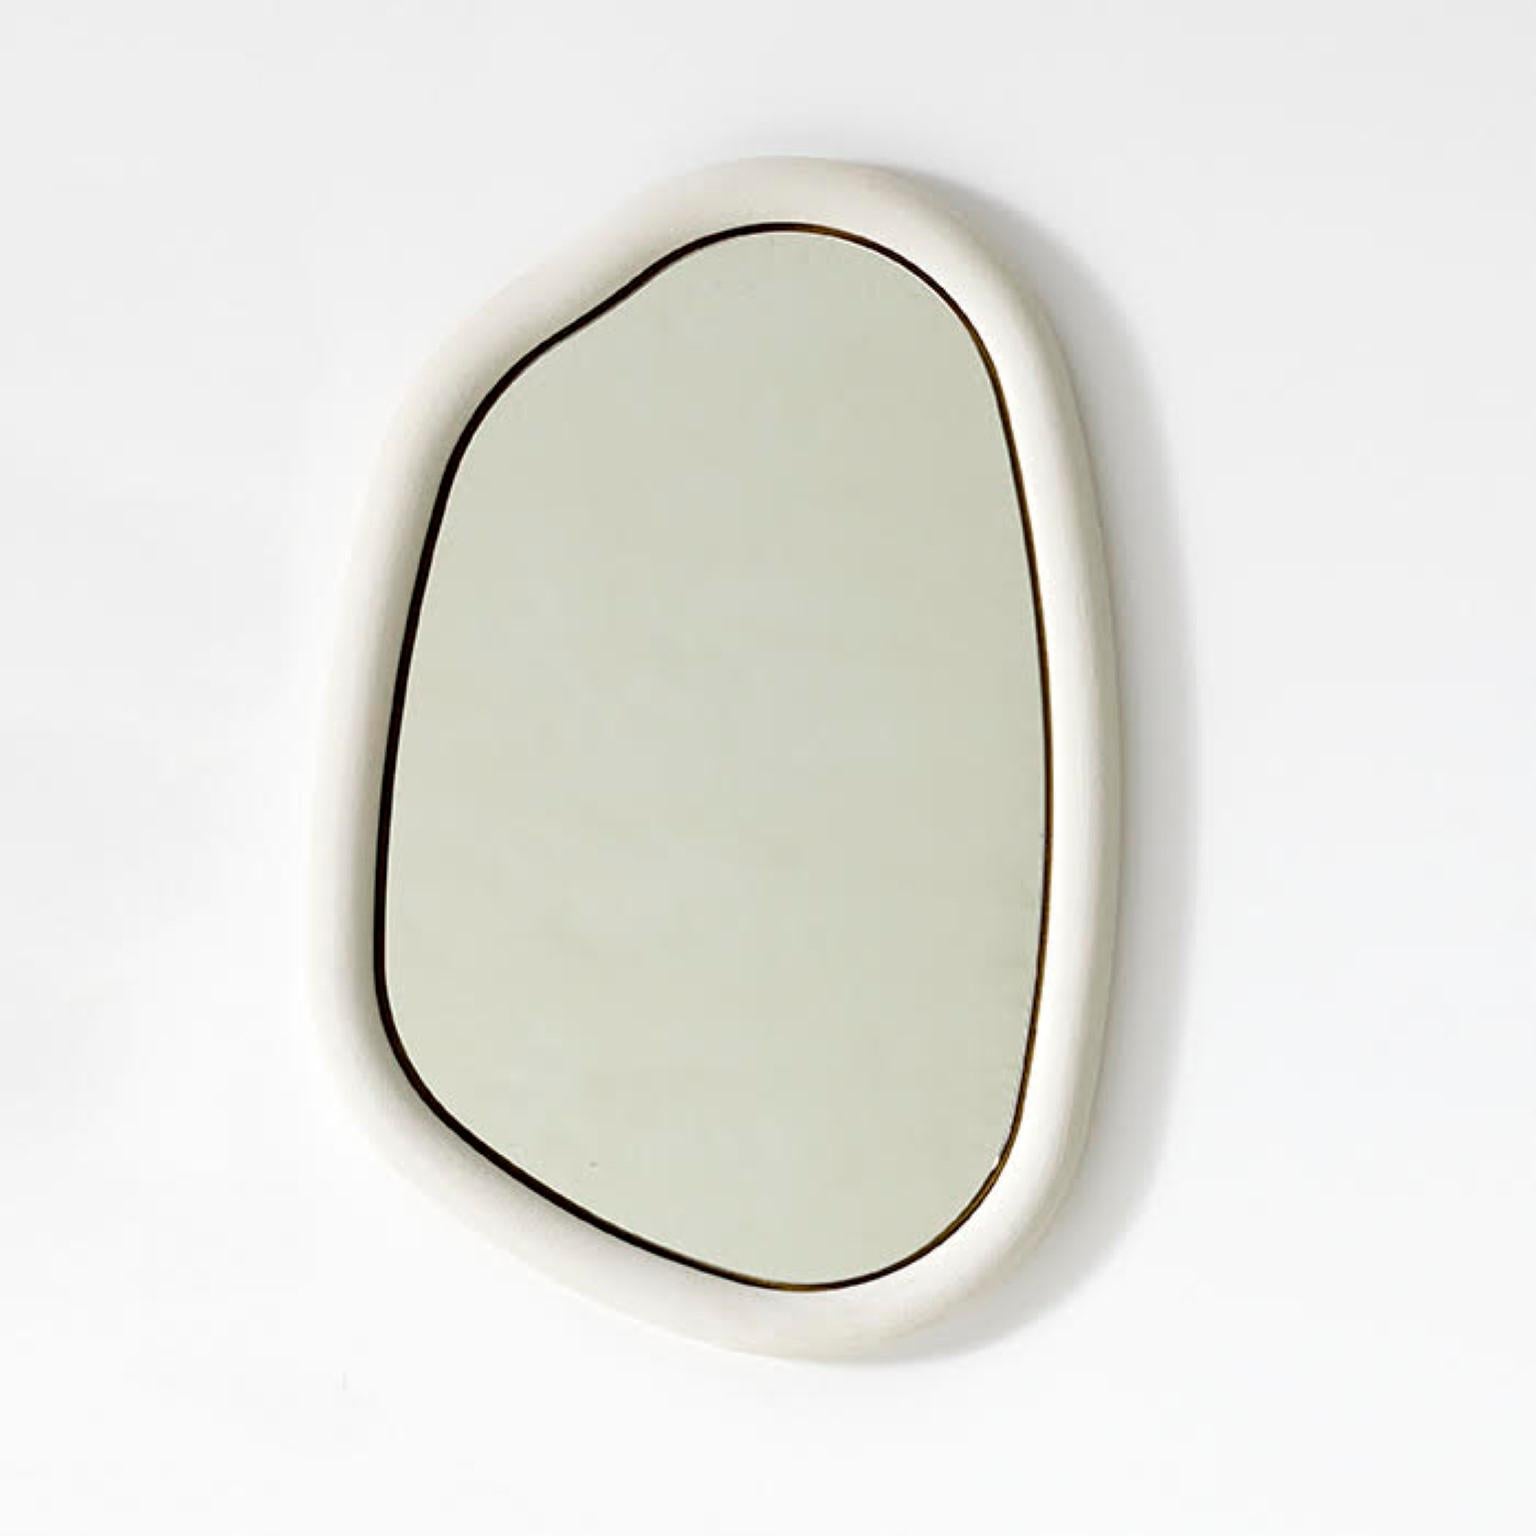 Gaelle-Spiegel von Philippe Colette (Postmoderne)